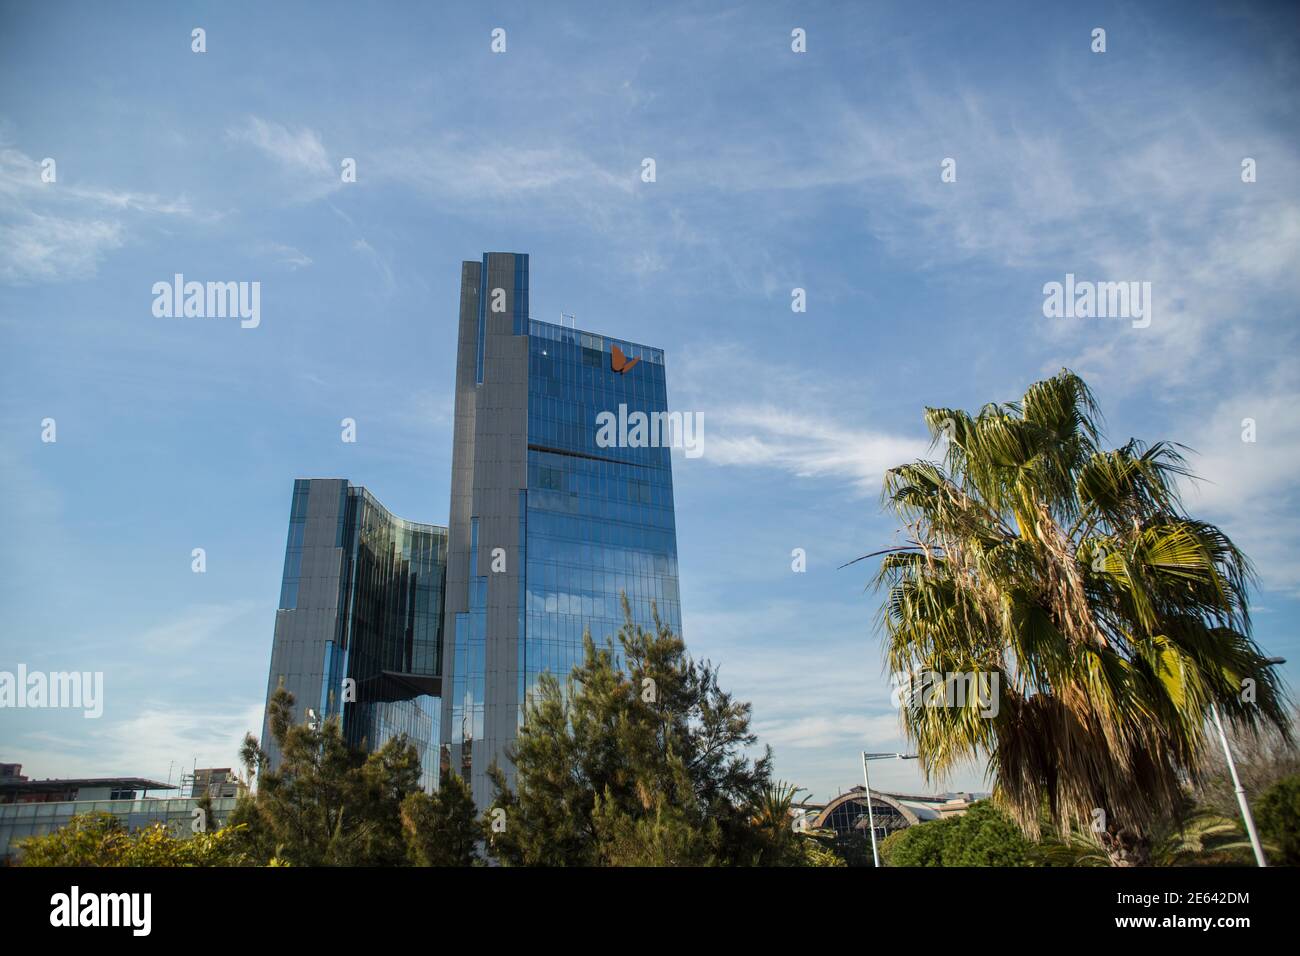 Das Logo des spanischen Strom- und Gasunternehmens Naturgy ist auf dem Firmengebäude in Barcelona zu sehen.der australische Investmentfonds IFM Investors hat ein teilweises freiwilliges Übernahmeangebot gestartet, um 22.69% des Aktienkapitals des spanischen Strom- und Gasunternehmens Naturgy zu übernehmen. Stockfoto